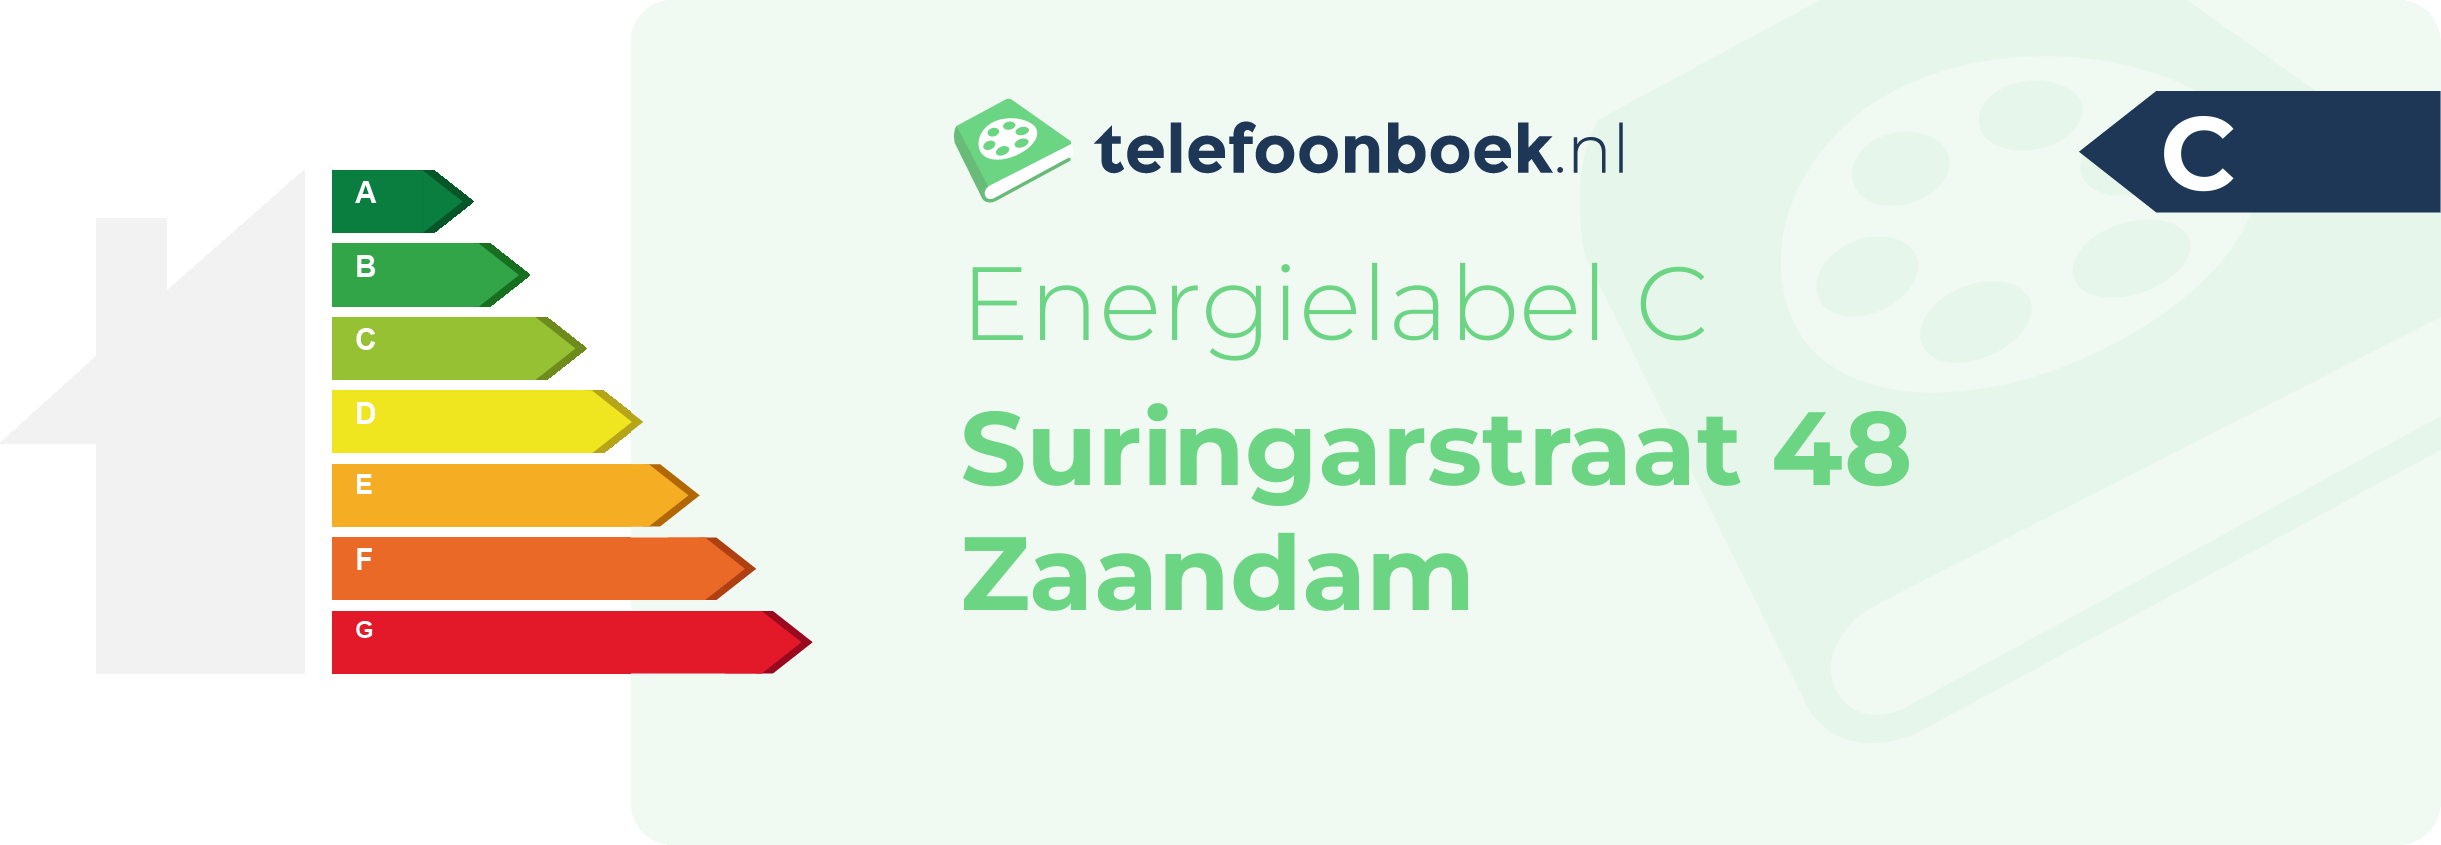 Energielabel Suringarstraat 48 Zaandam